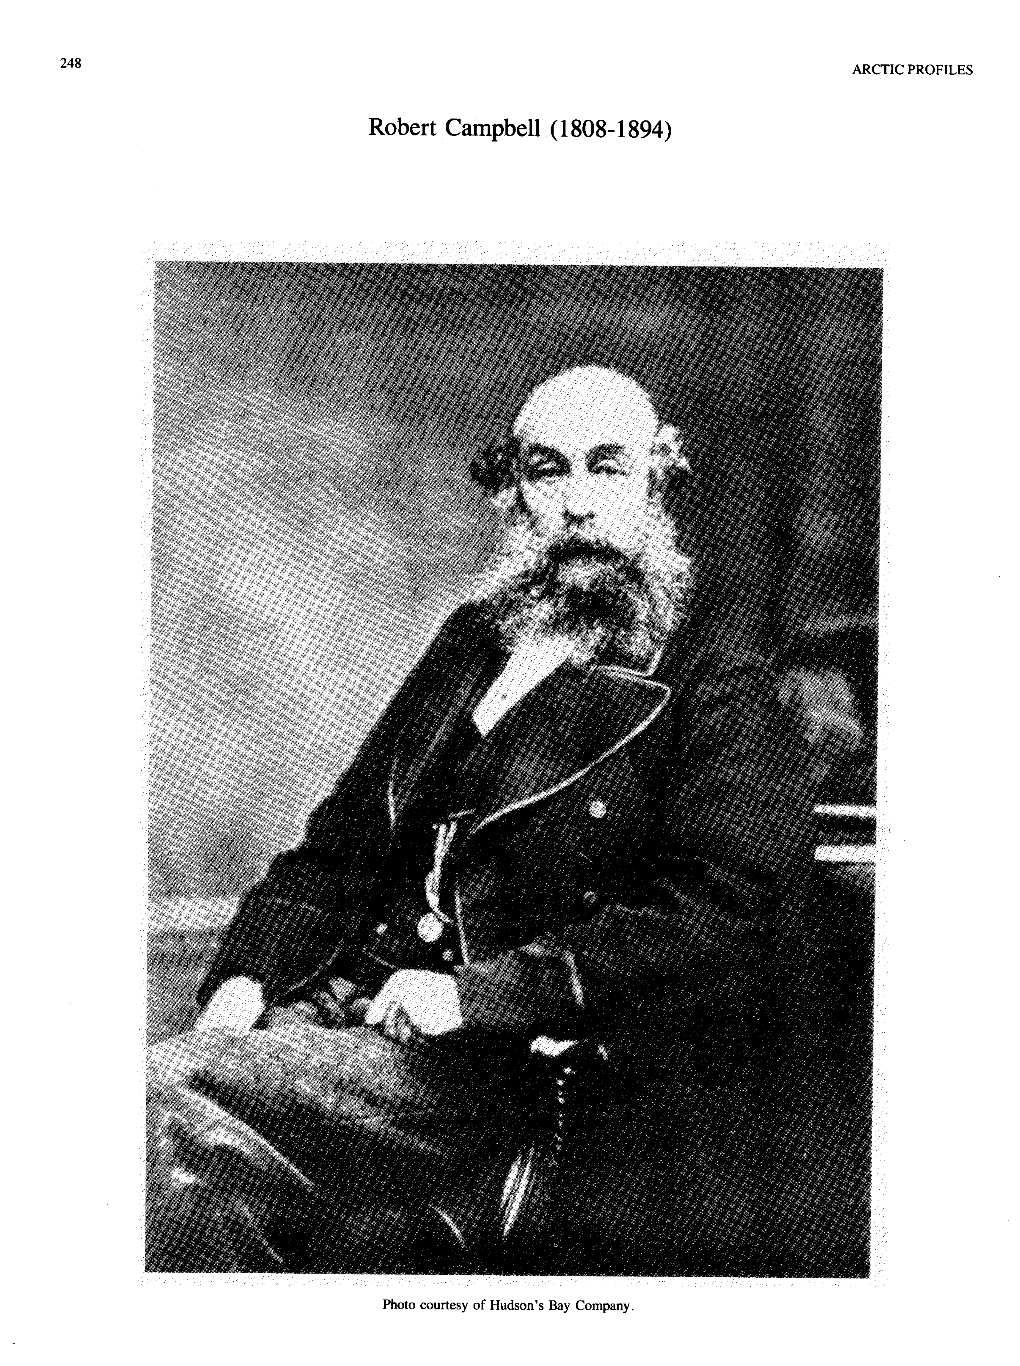 Robert Campbell (1808-1894)